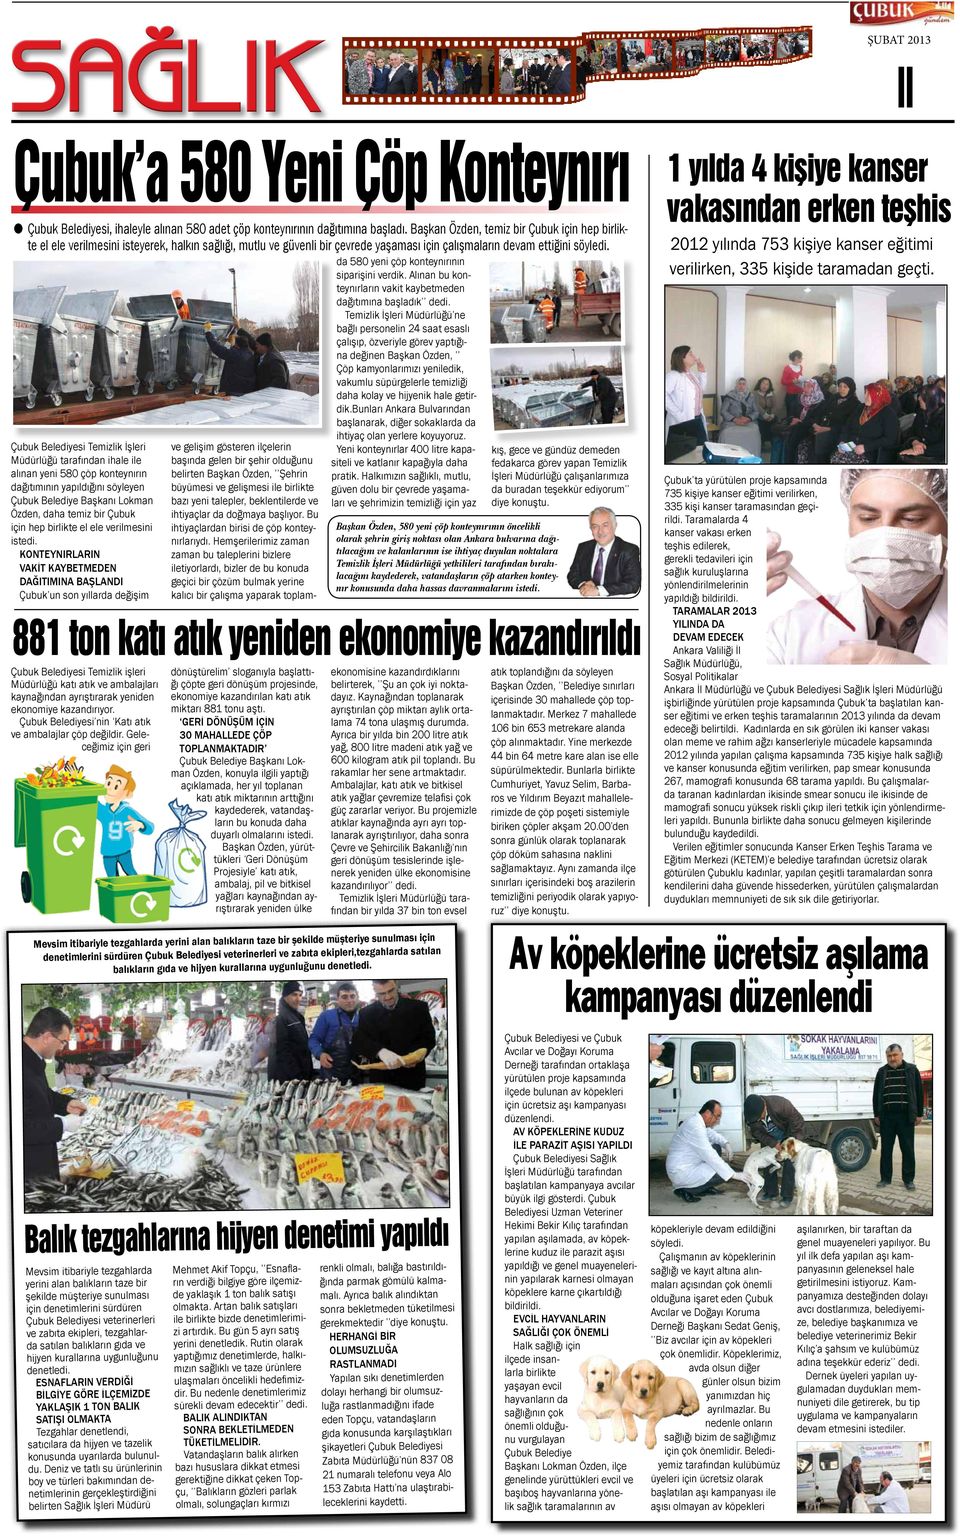 Çubuk Belediyesi Temizlik İşleri Müdürlüğü tarafından ihale ile alınan yeni 580 çöp konteynırın dağıtımının yapıldığını söyleyen Çubuk Belediye Başkanı Lokman Özden, daha temiz bir Çubuk için hep